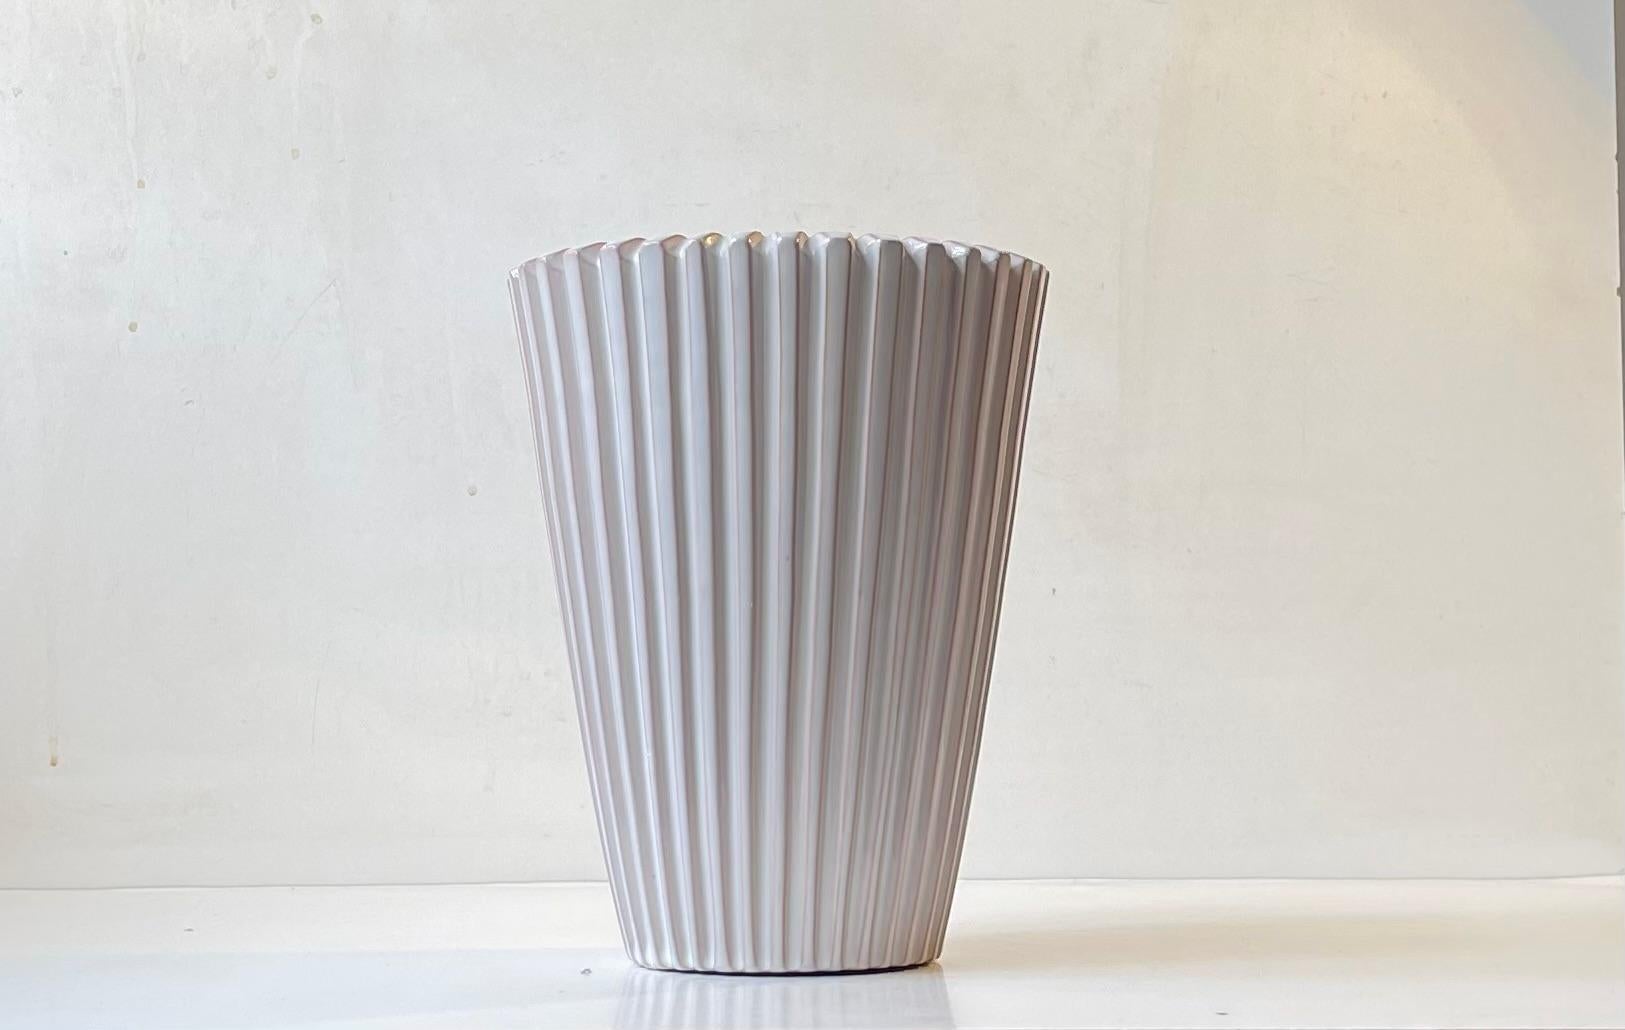 Grand vase en céramique de style Art déco des années 1950. Corpus cannelé entièrement vitrifié en glaçure blanche. Il a été conçu par Agnethe Sørensen et fabriqué par Eslau au Danemark dans les années 1950 ou 1960. Cet exemple particulier est le